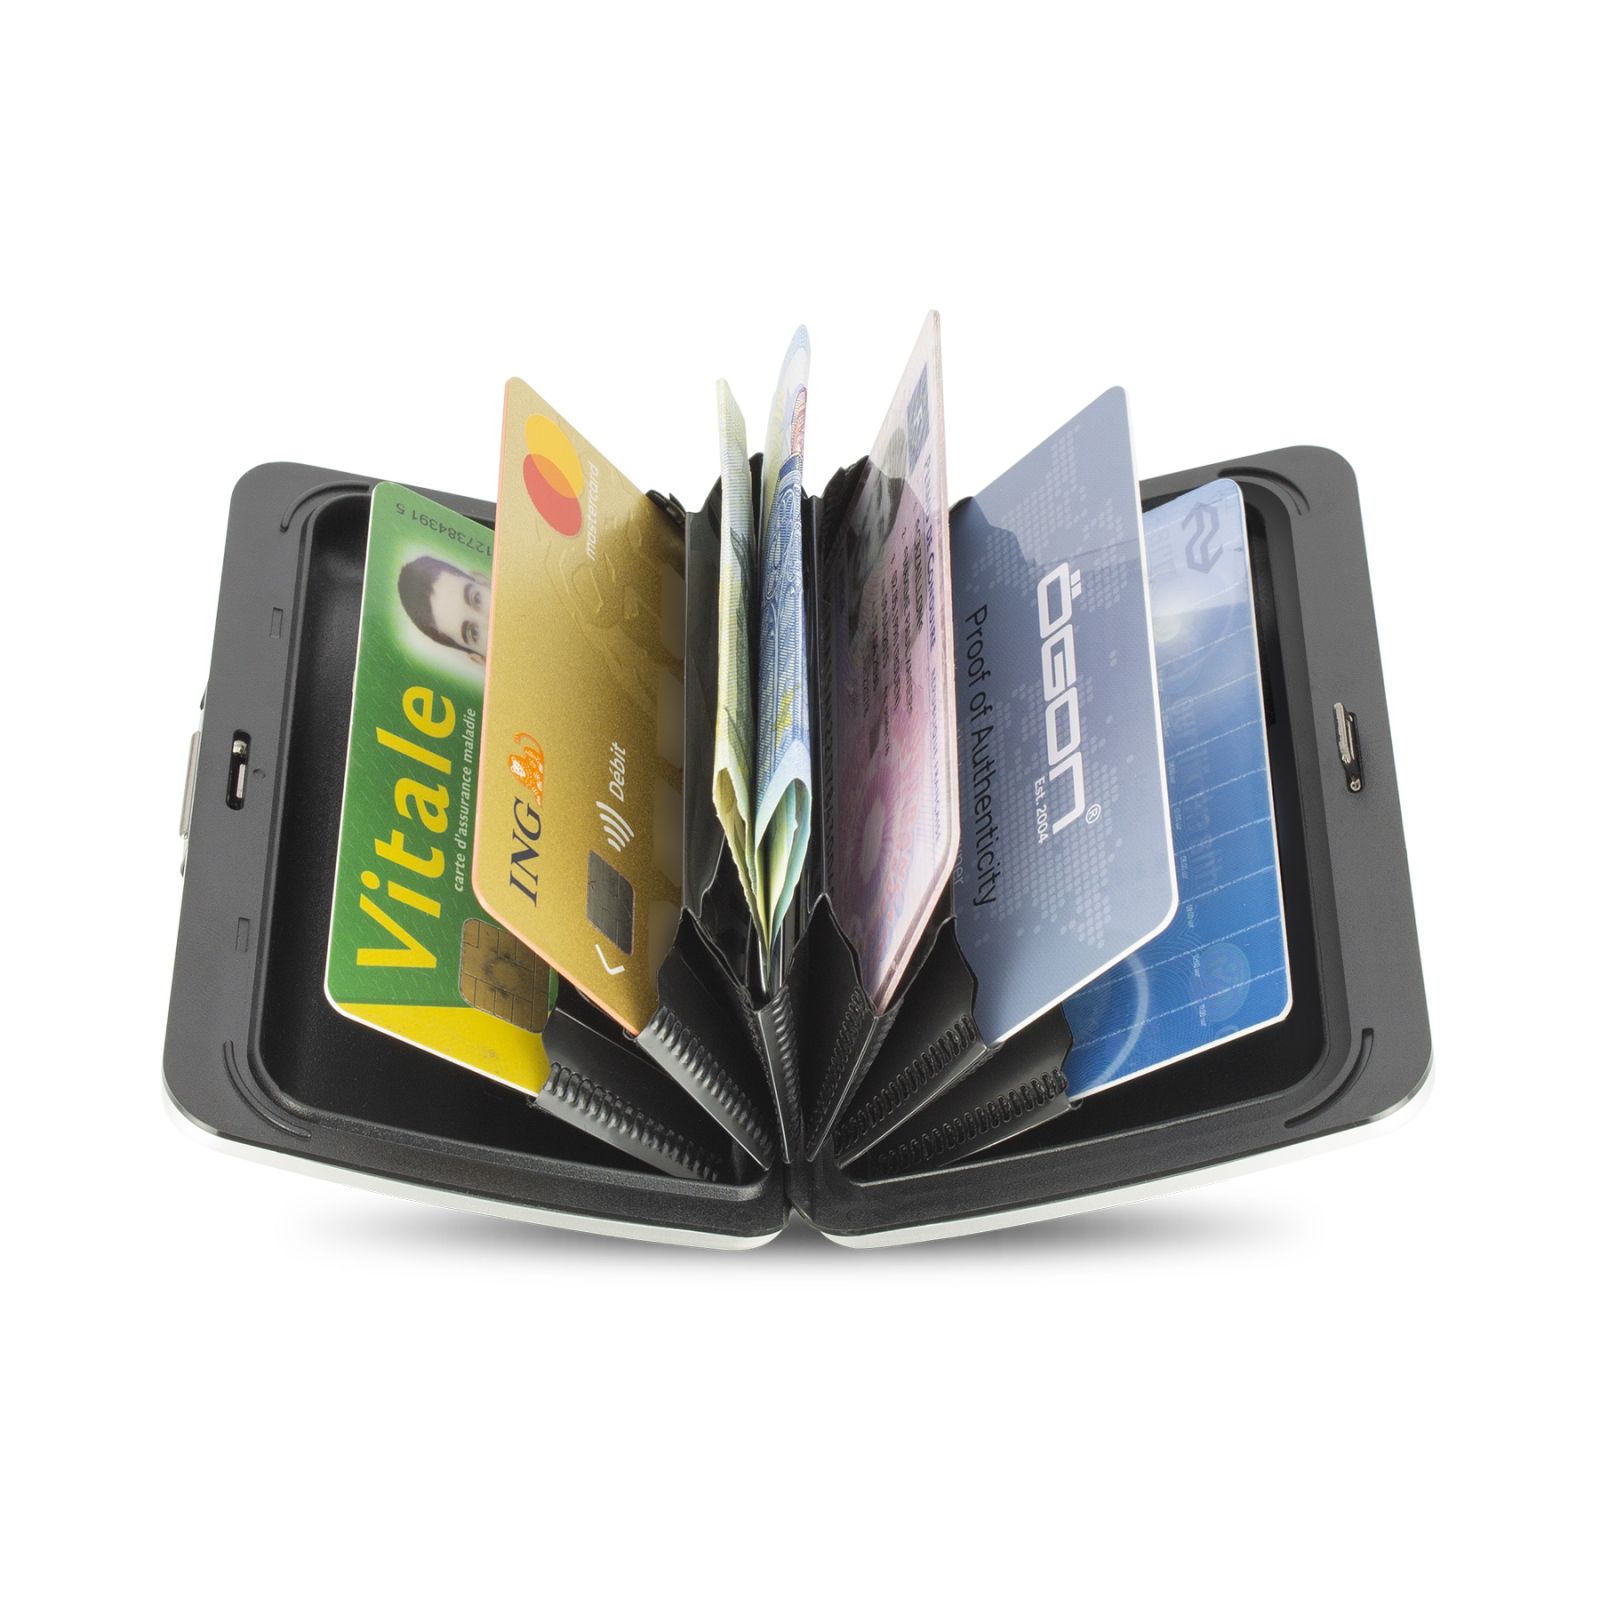 OGON Aluminum Wallet Smart Case V2.0 - Rise Gold